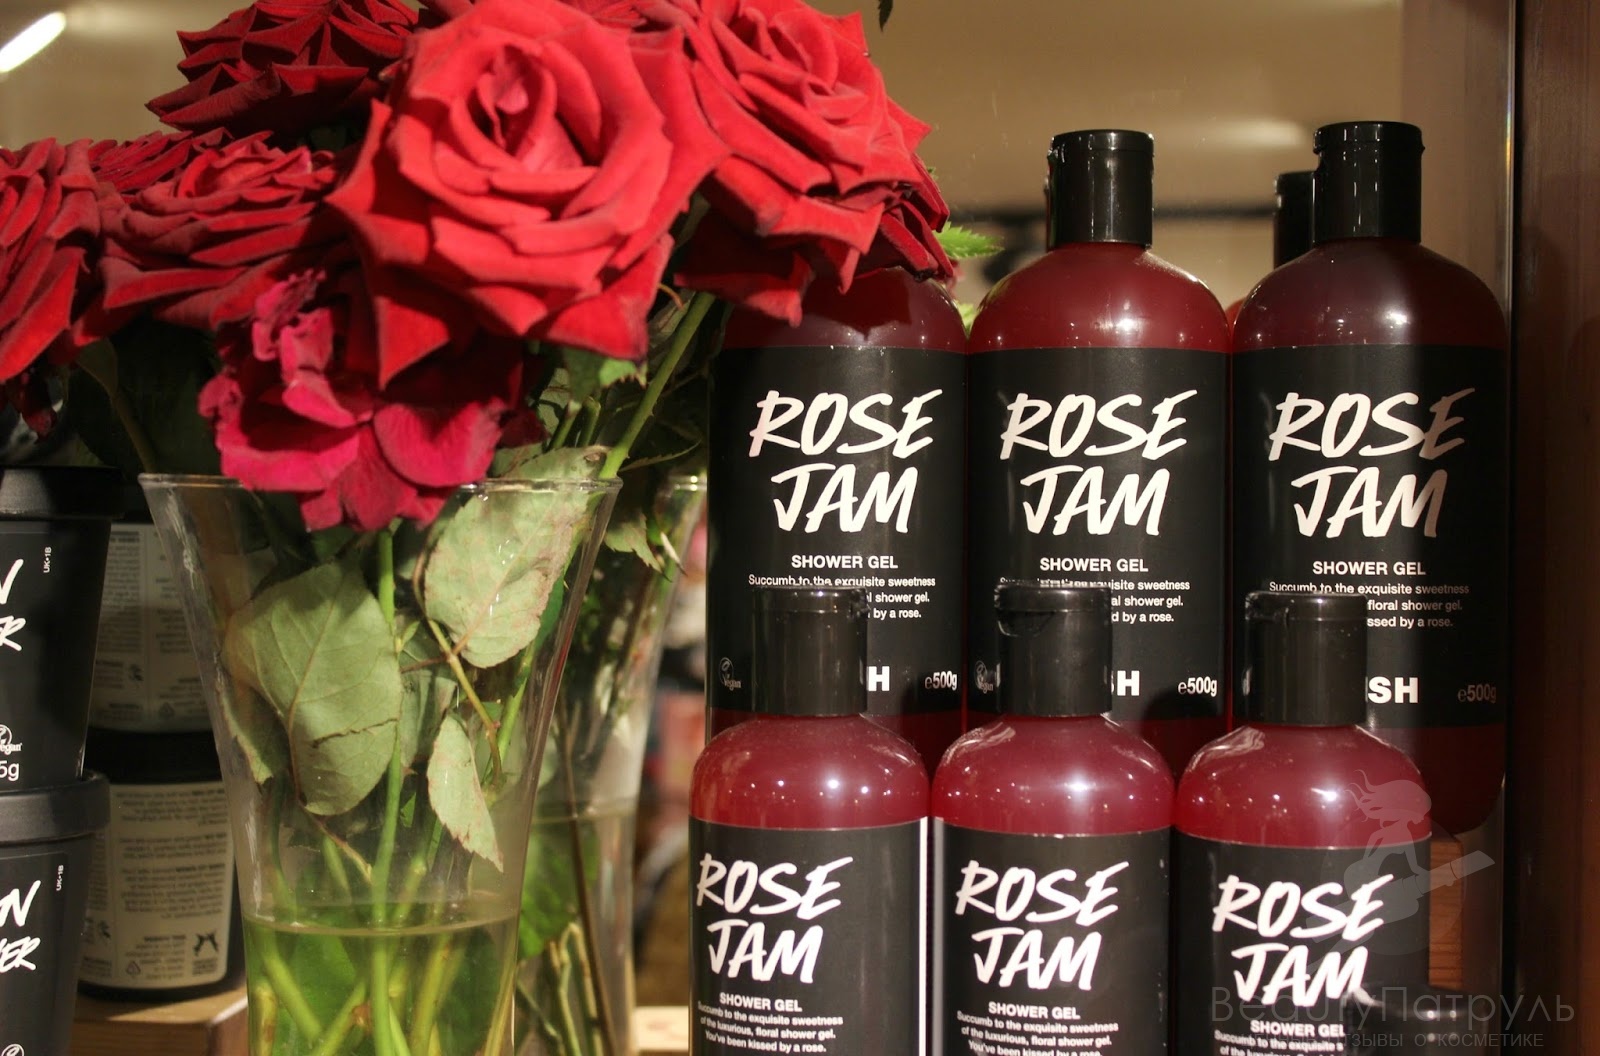 Rise shower. Rose Jam lush. Rose Shower Gel. Black Rose гель для душа. Black Rose гель для душа Корея.